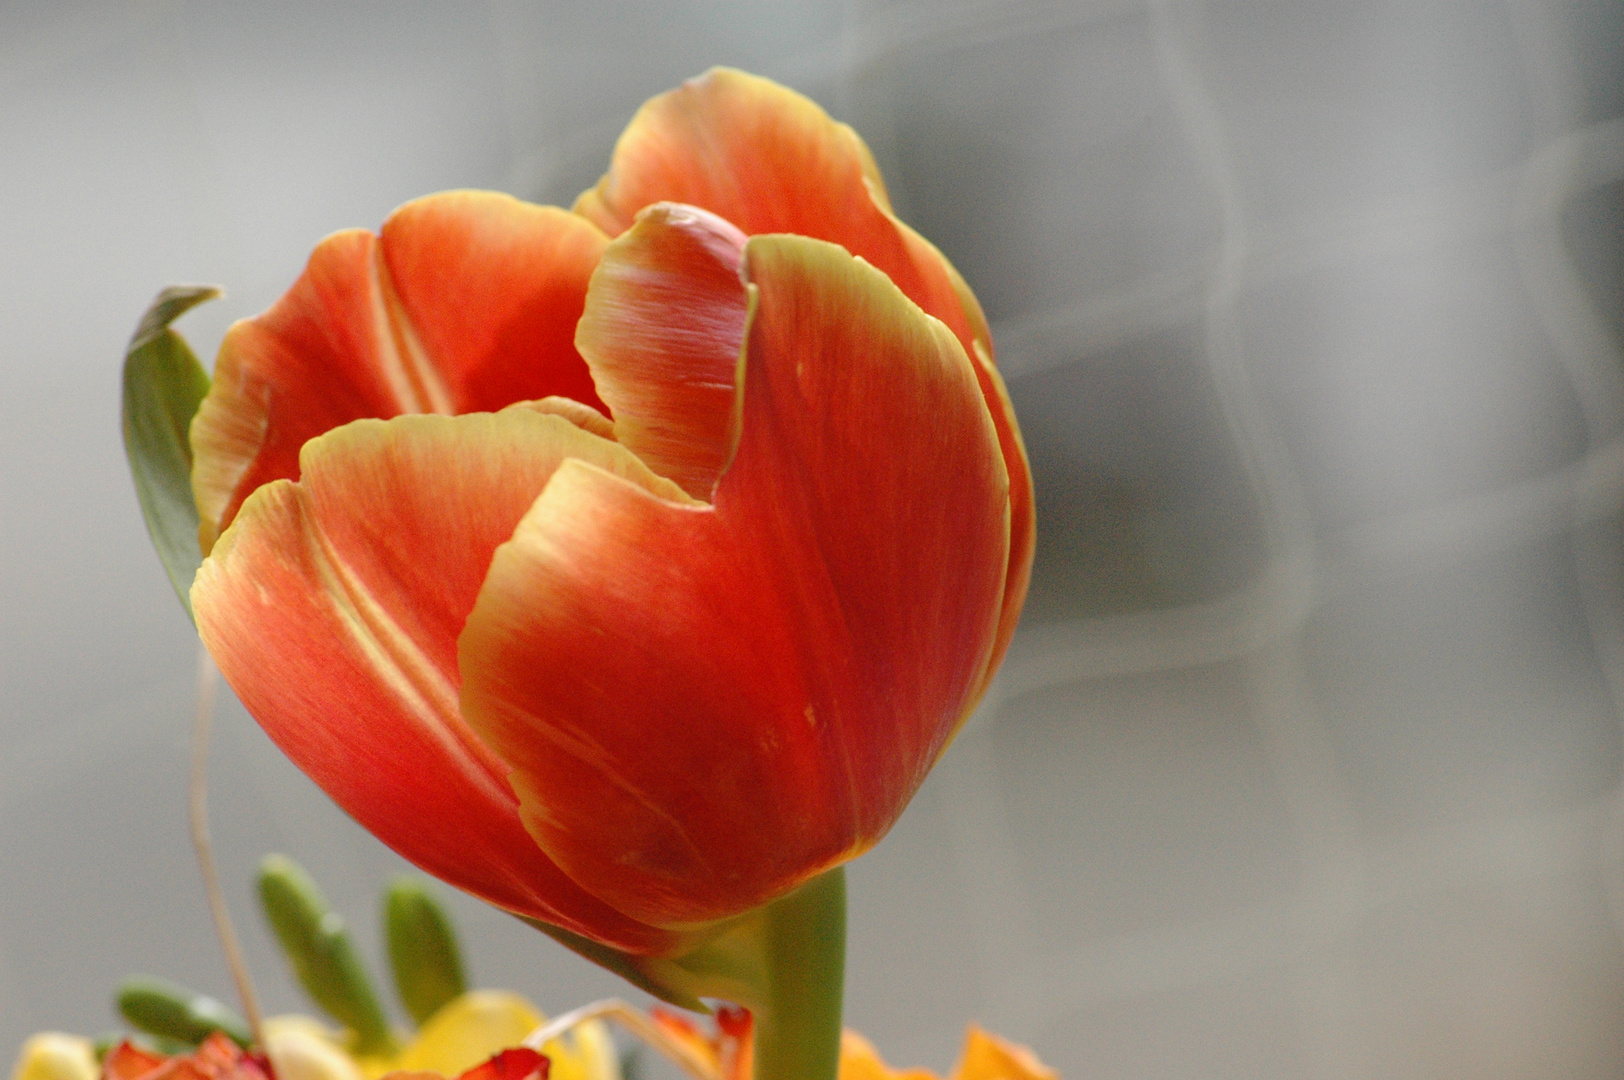 the tulip